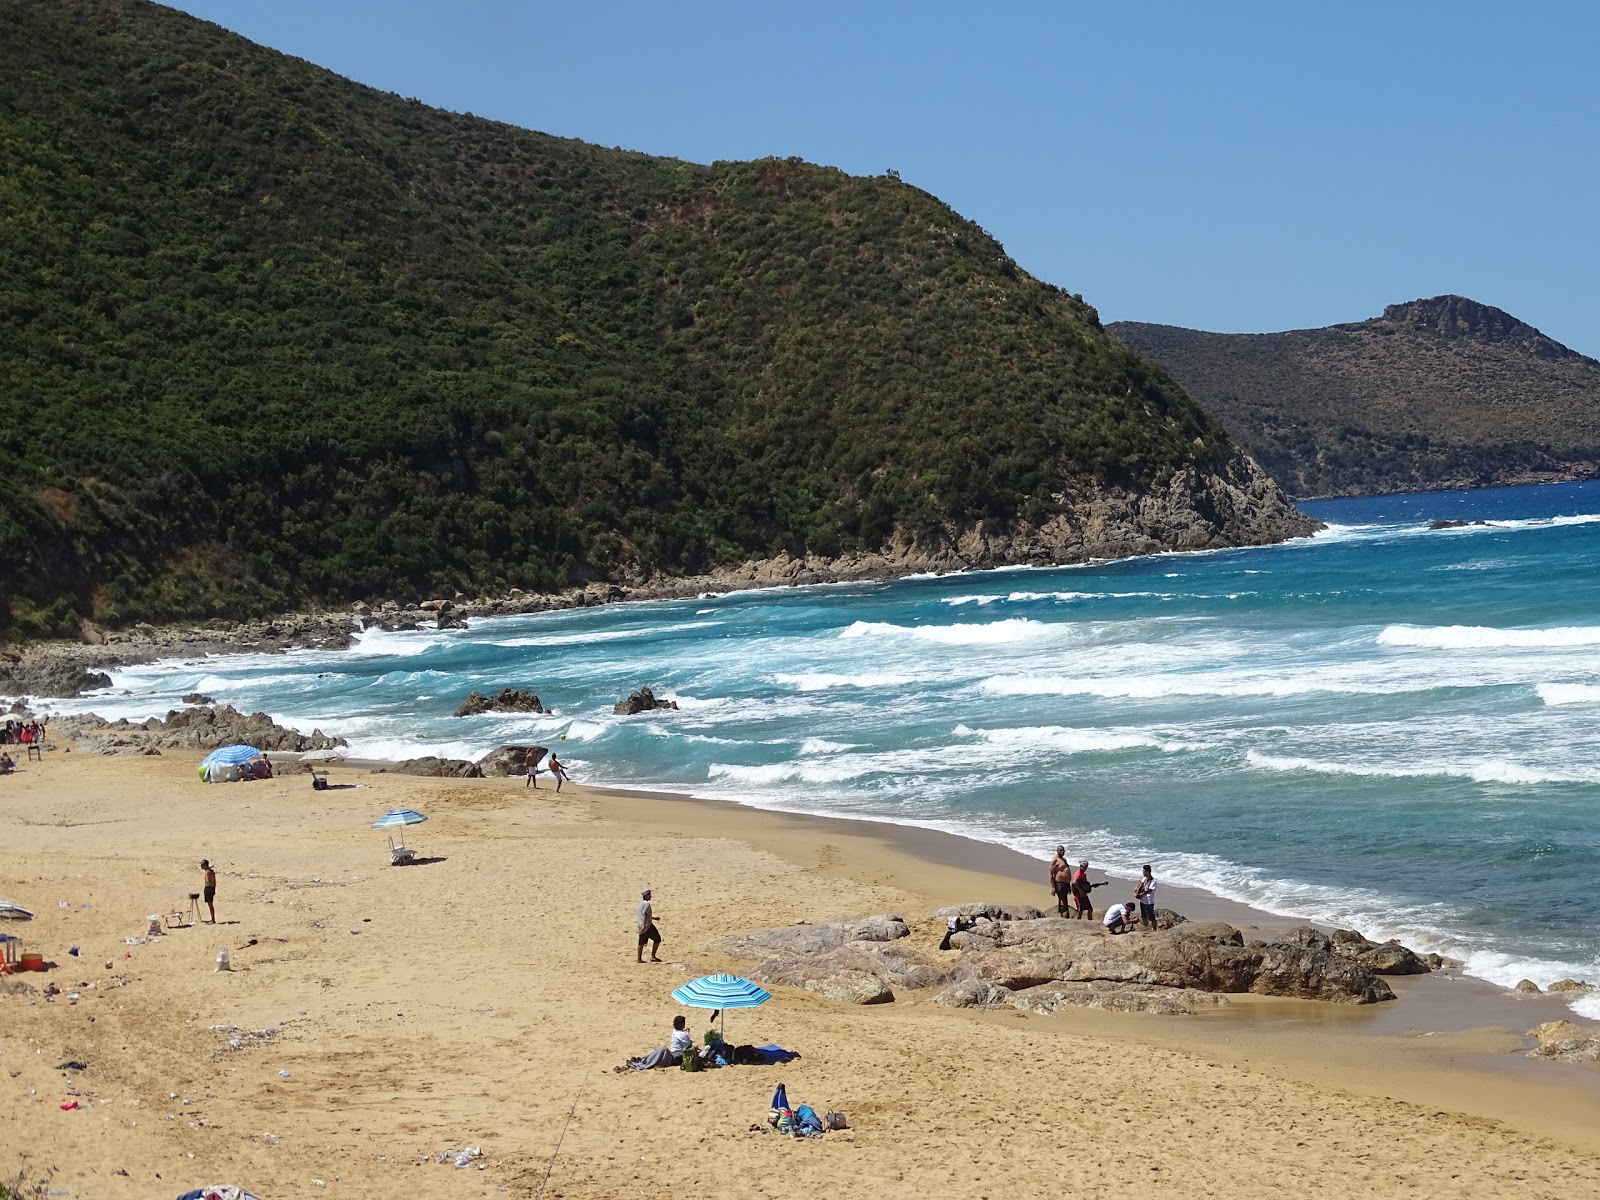 Oued tanji, the Beach'in fotoğrafı doğal alan içinde bulunmaktadır